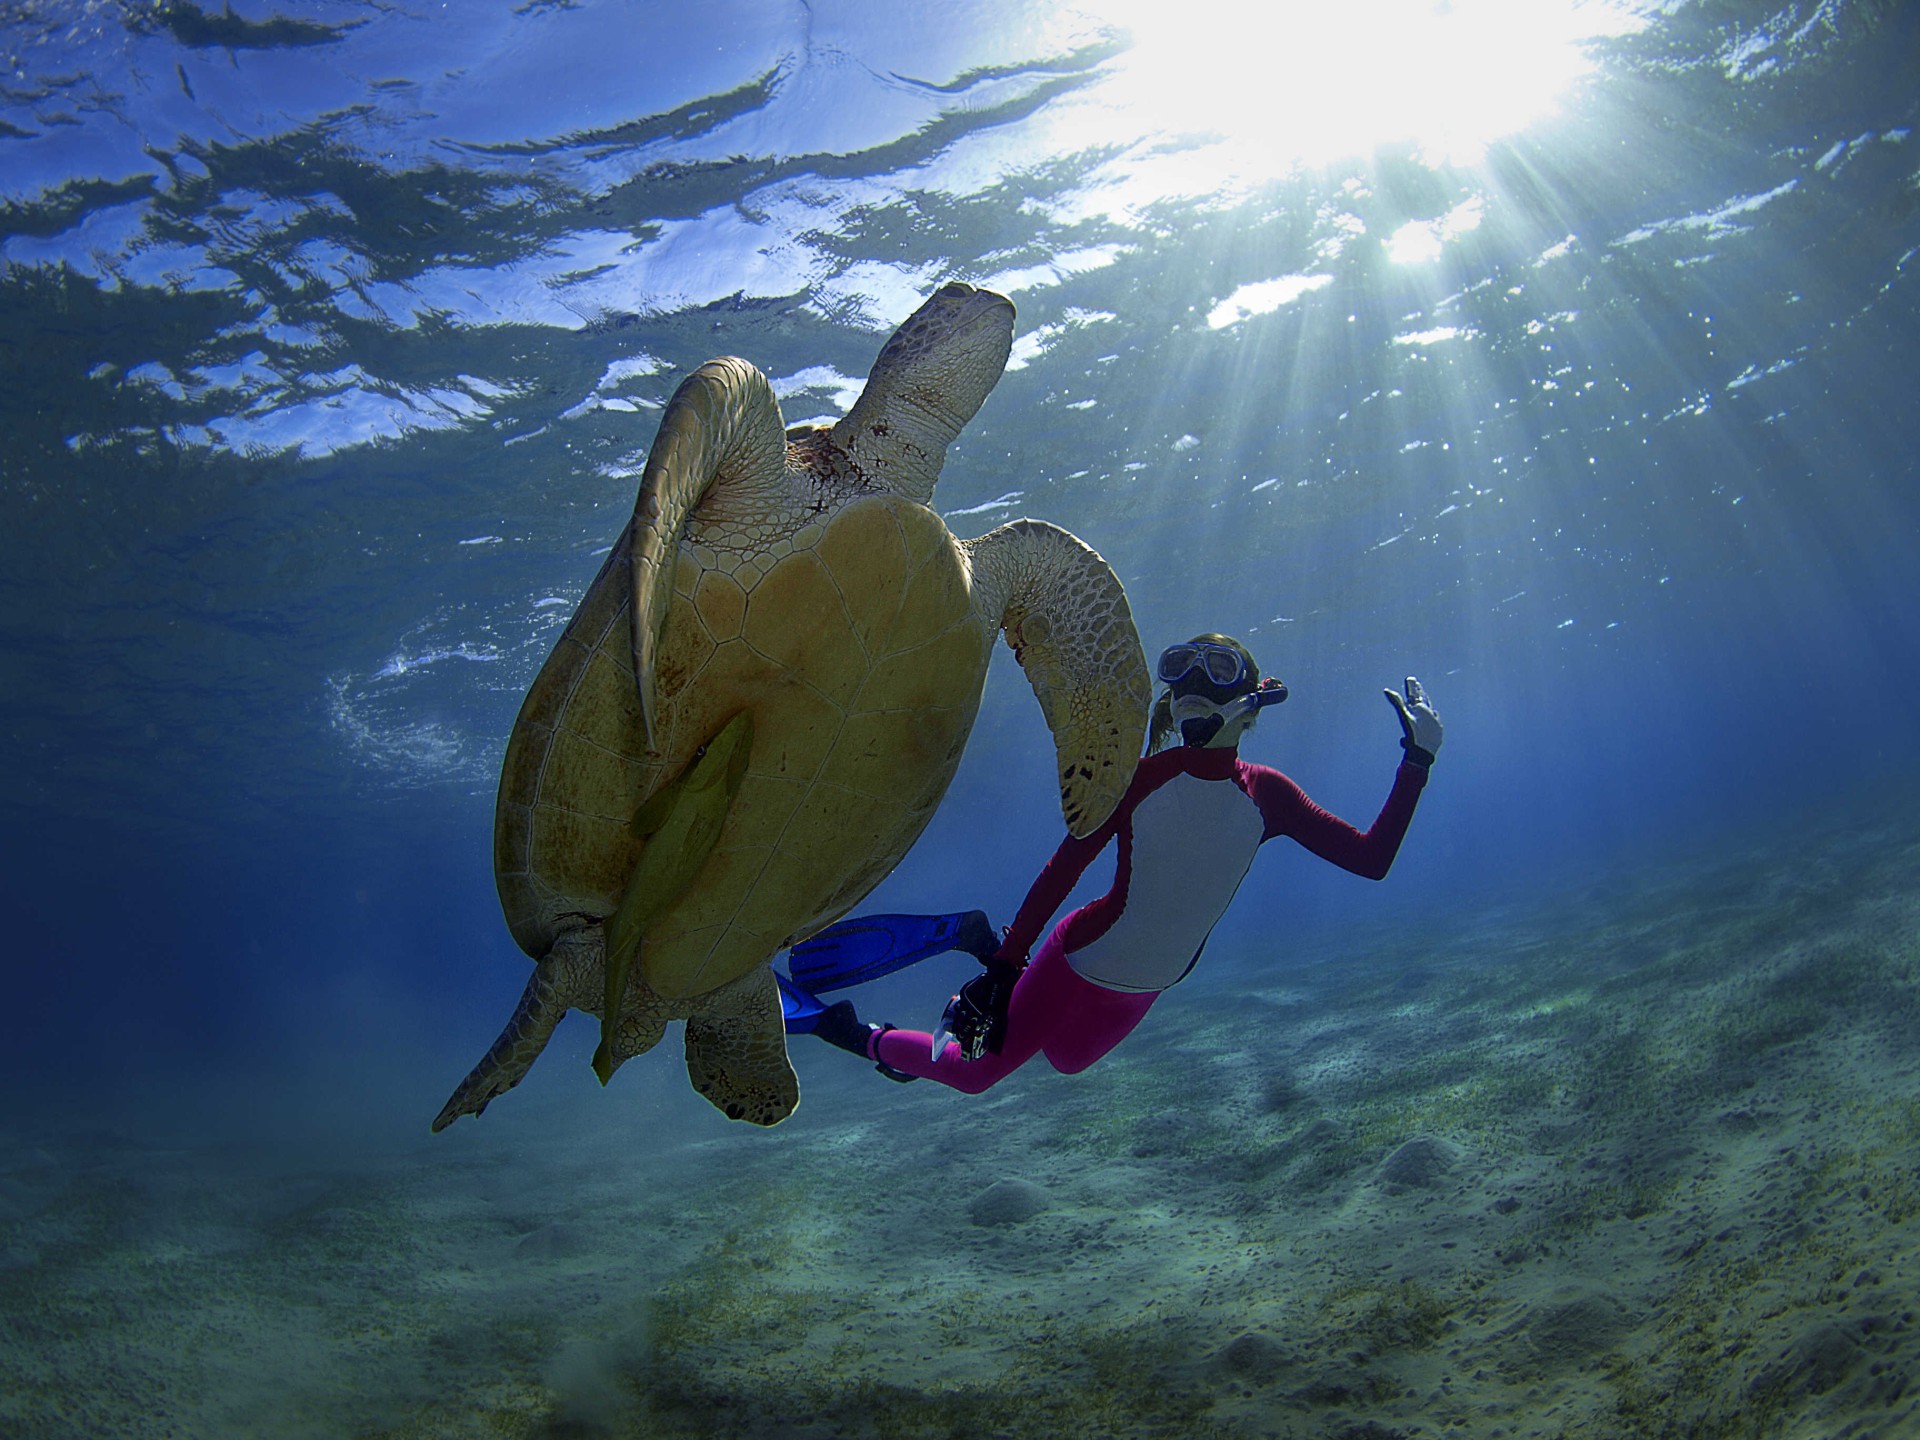 Rencontre avec une tortue verte en snorkeling